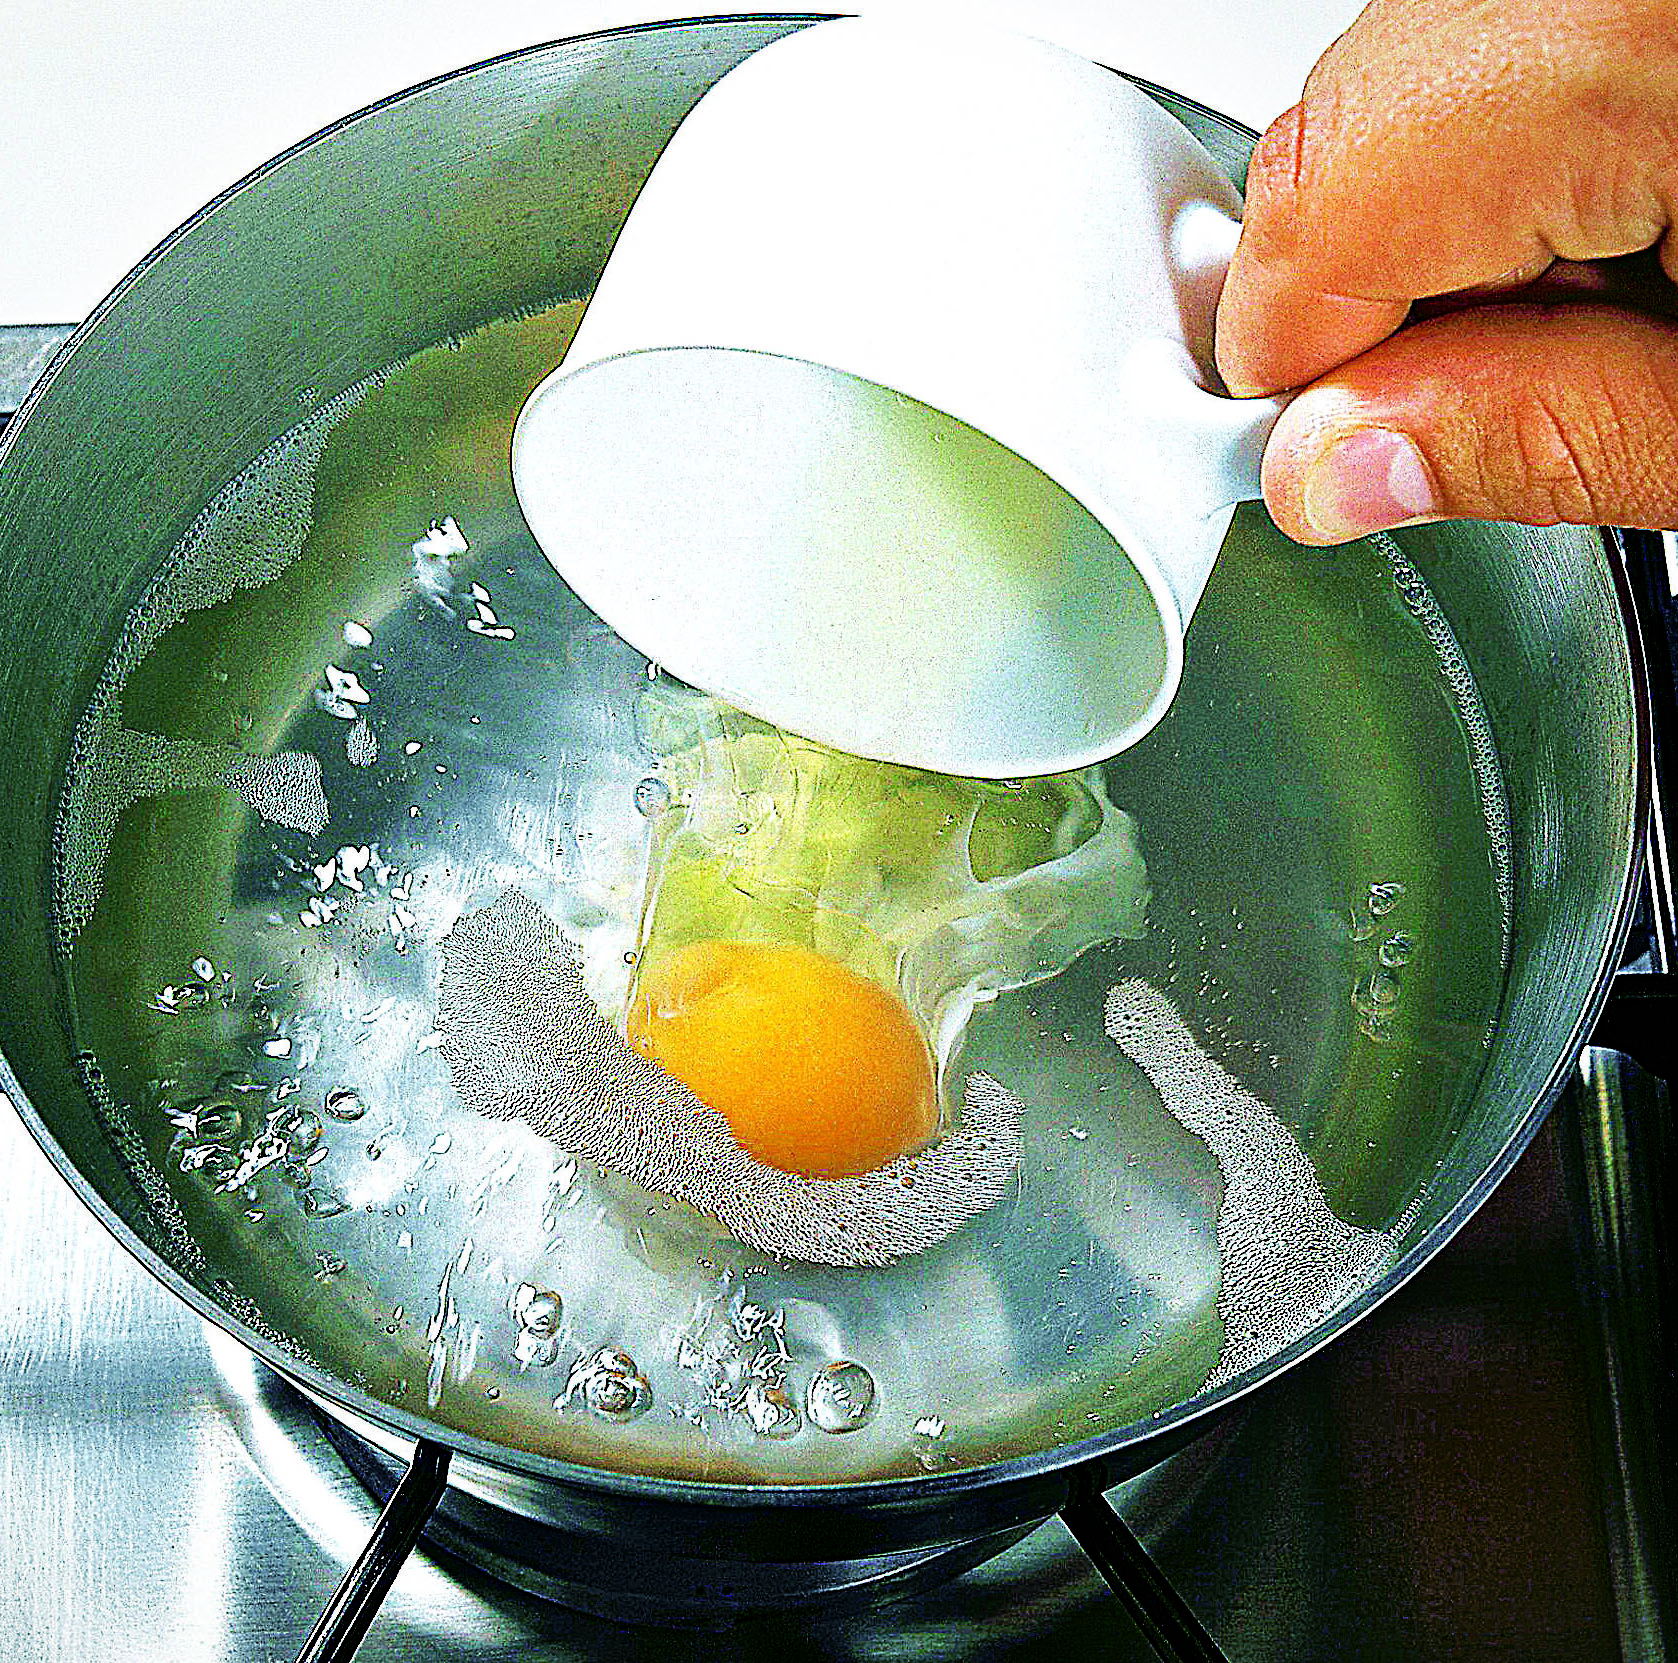 Сварить яйца без воды